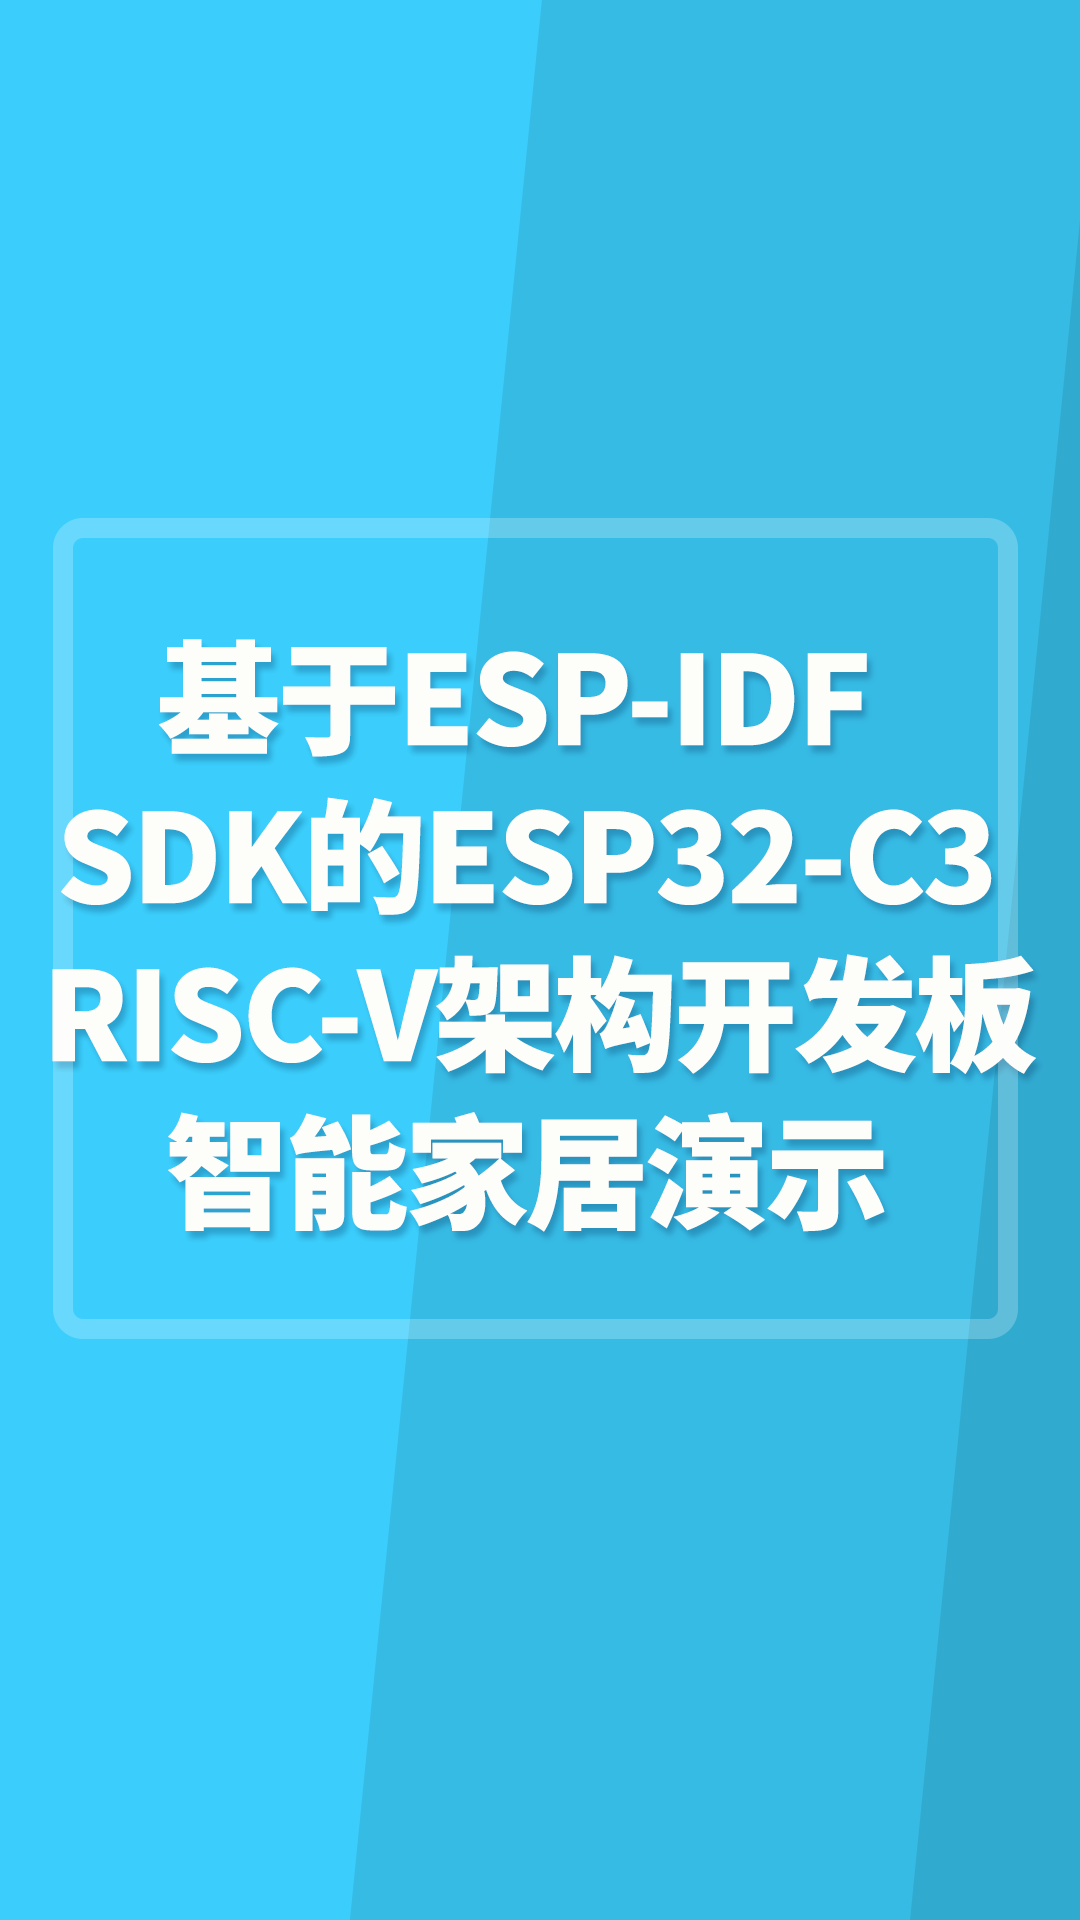 基于ESP-IDF SDK的ESP32-C3 RISC-V架构开发板智能家居演示示例#嵌入式开发 